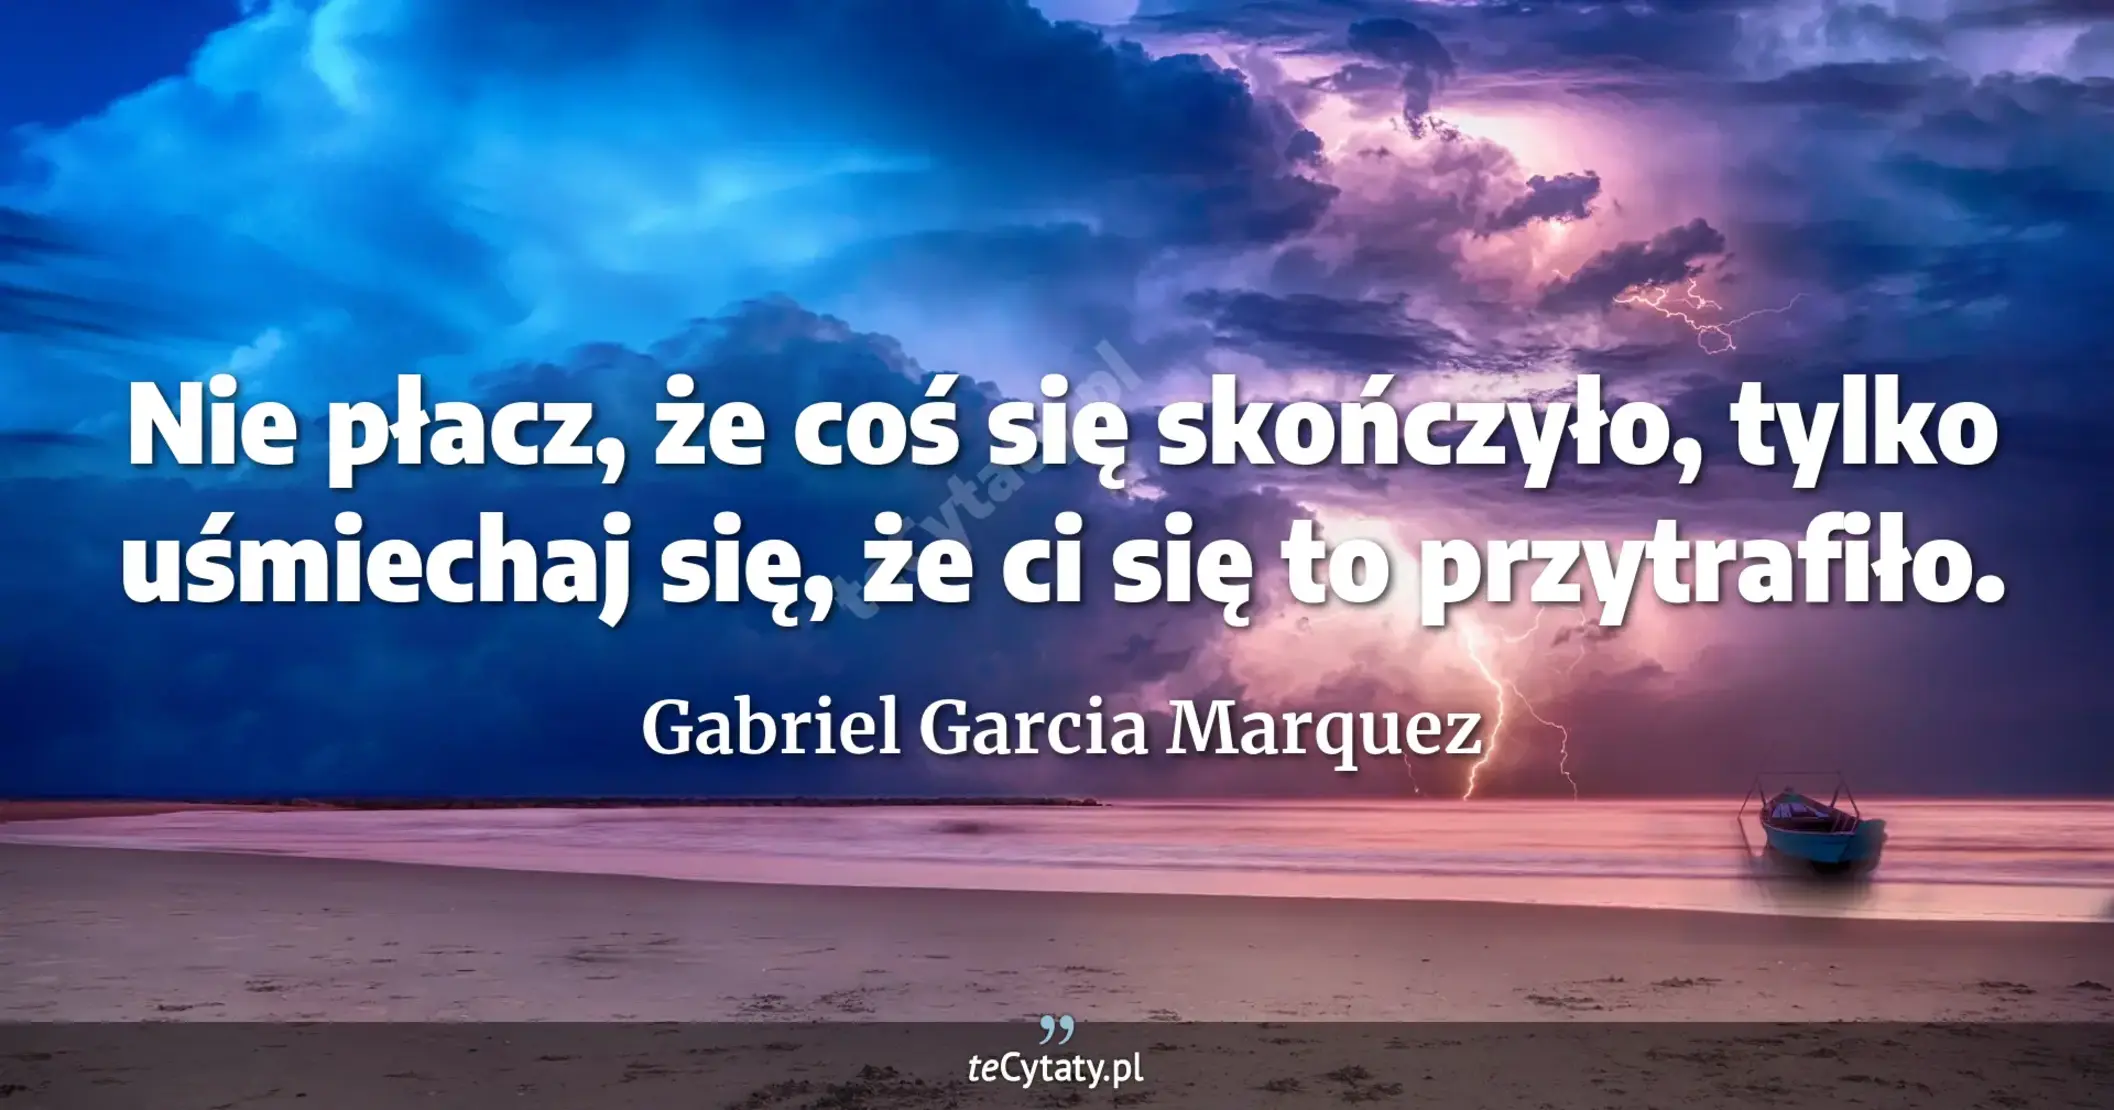 Nie płacz, że coś się skończyło, tylko uśmiechaj się, że ci się to przytrafiło. - Gabriel Garcia Marquez